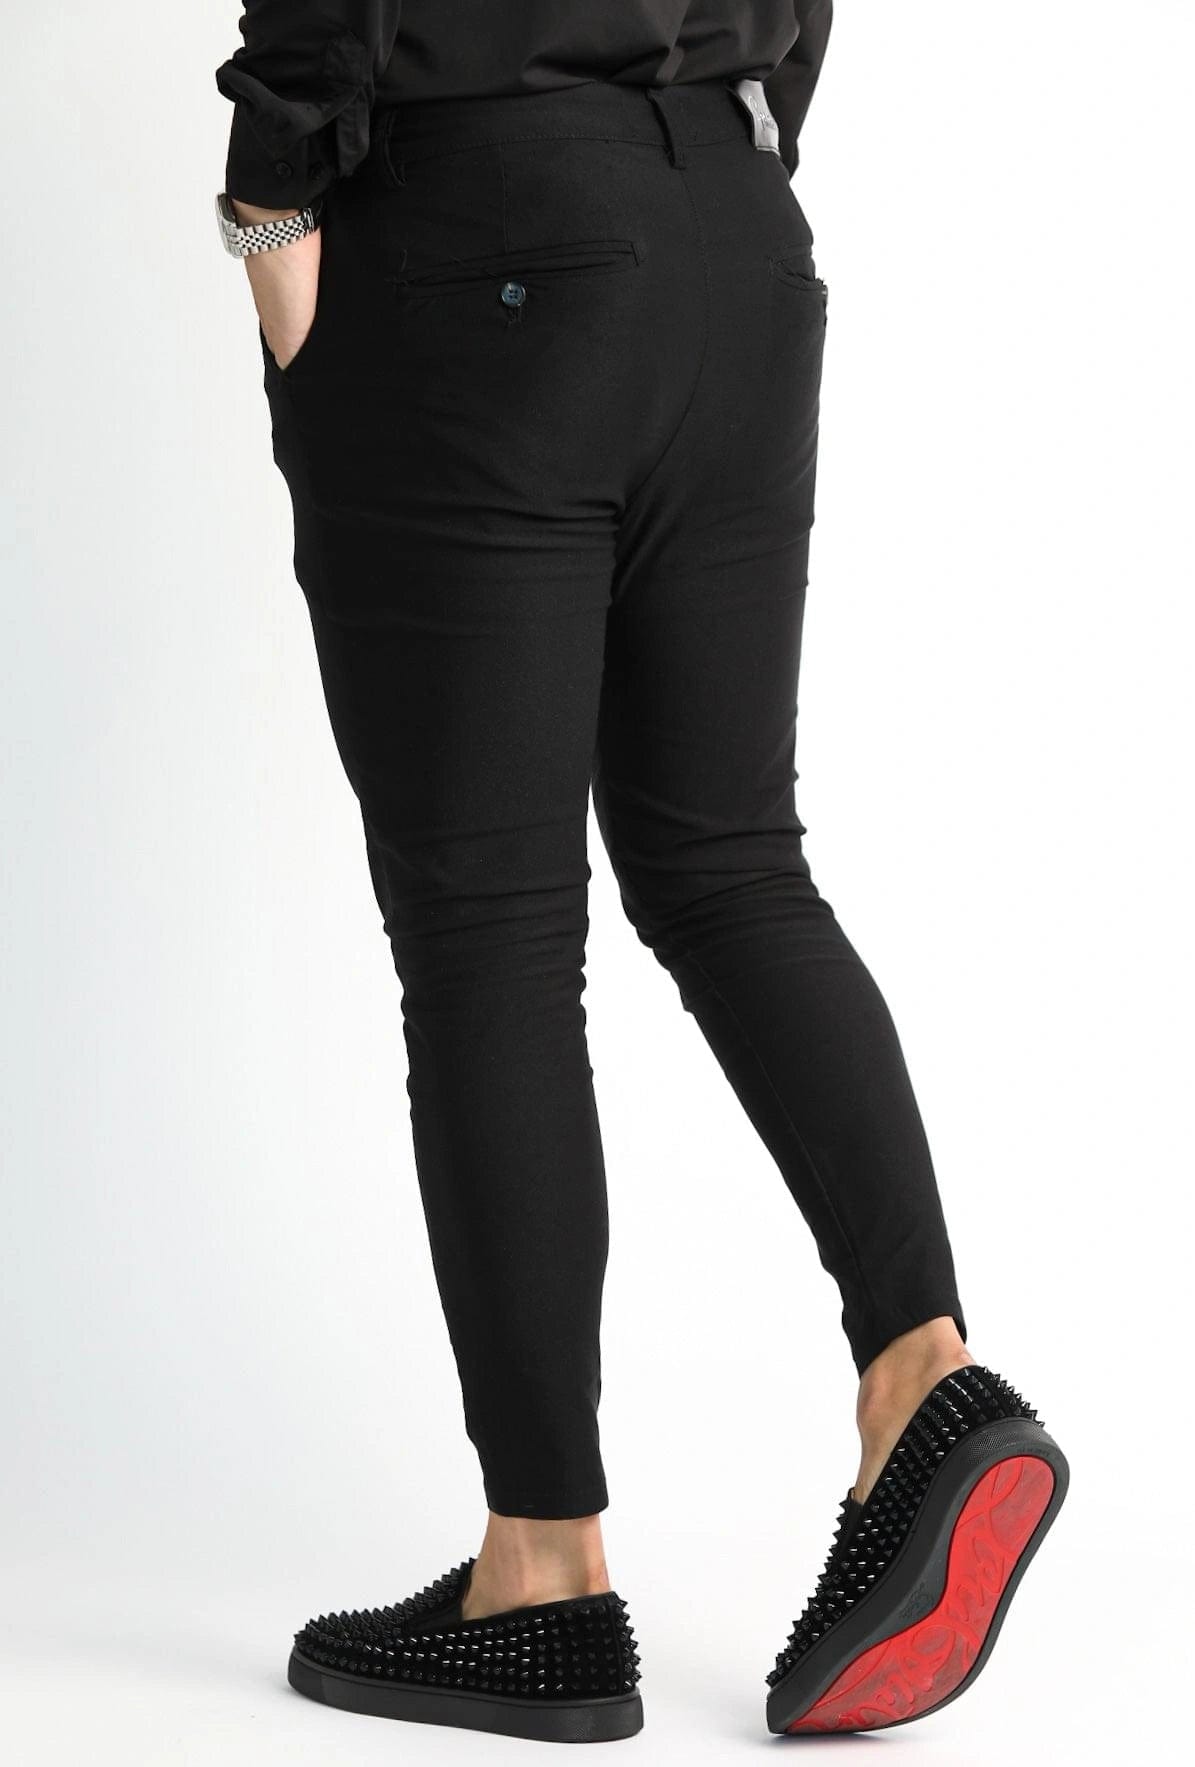 Buy Men Black Solid Slim Fit Formal Trousers Online - 662663